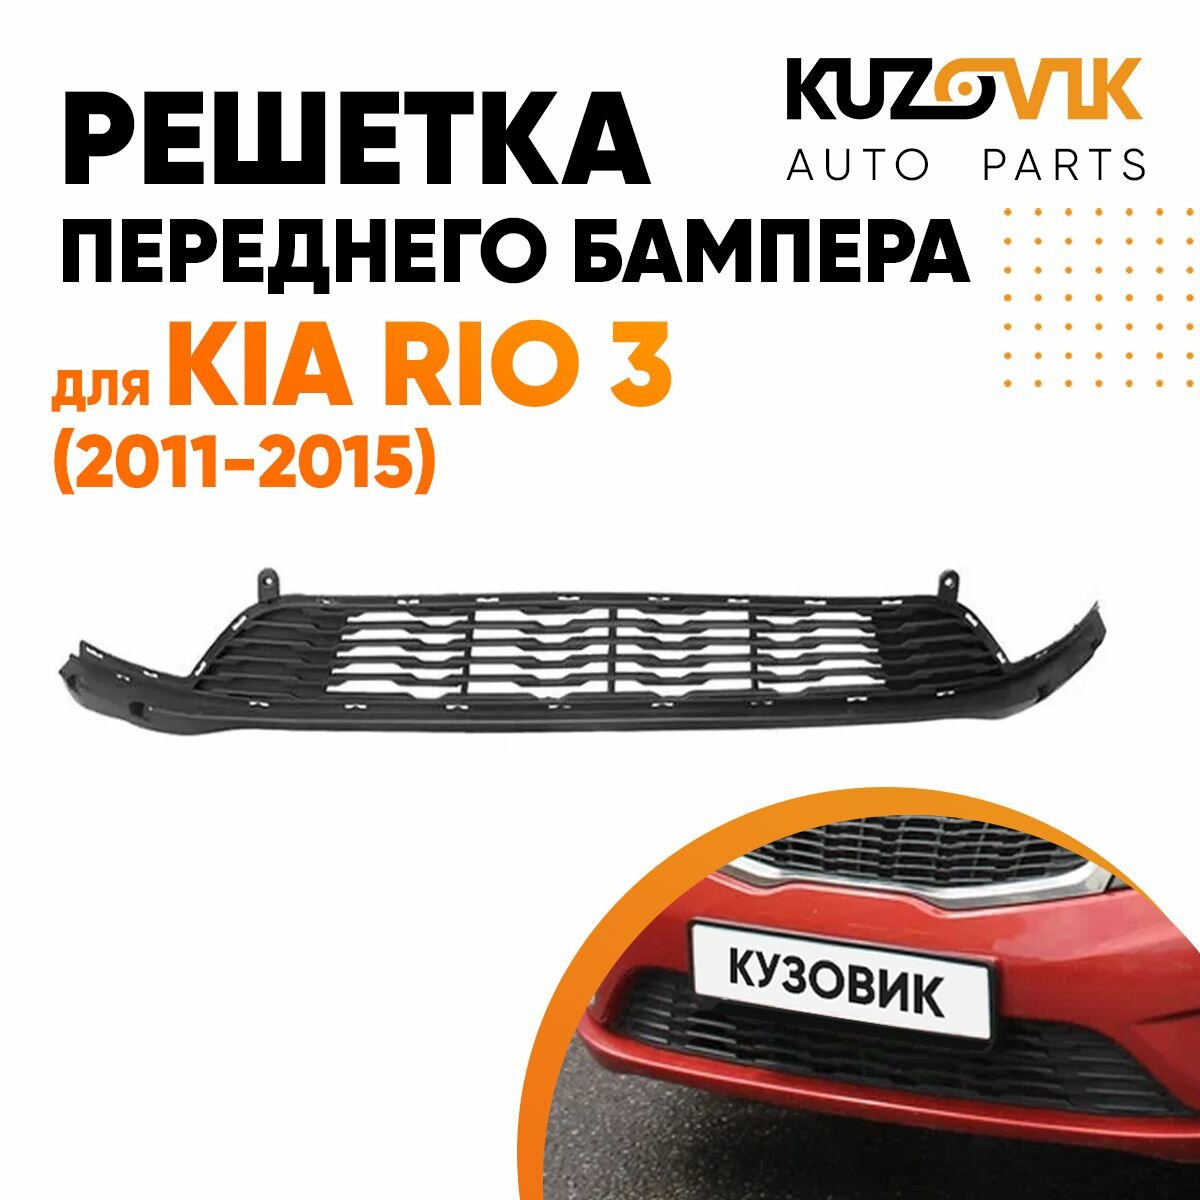 Решётка переднего бампера для Киа Рио Kia Rio 3 (2011-2015)